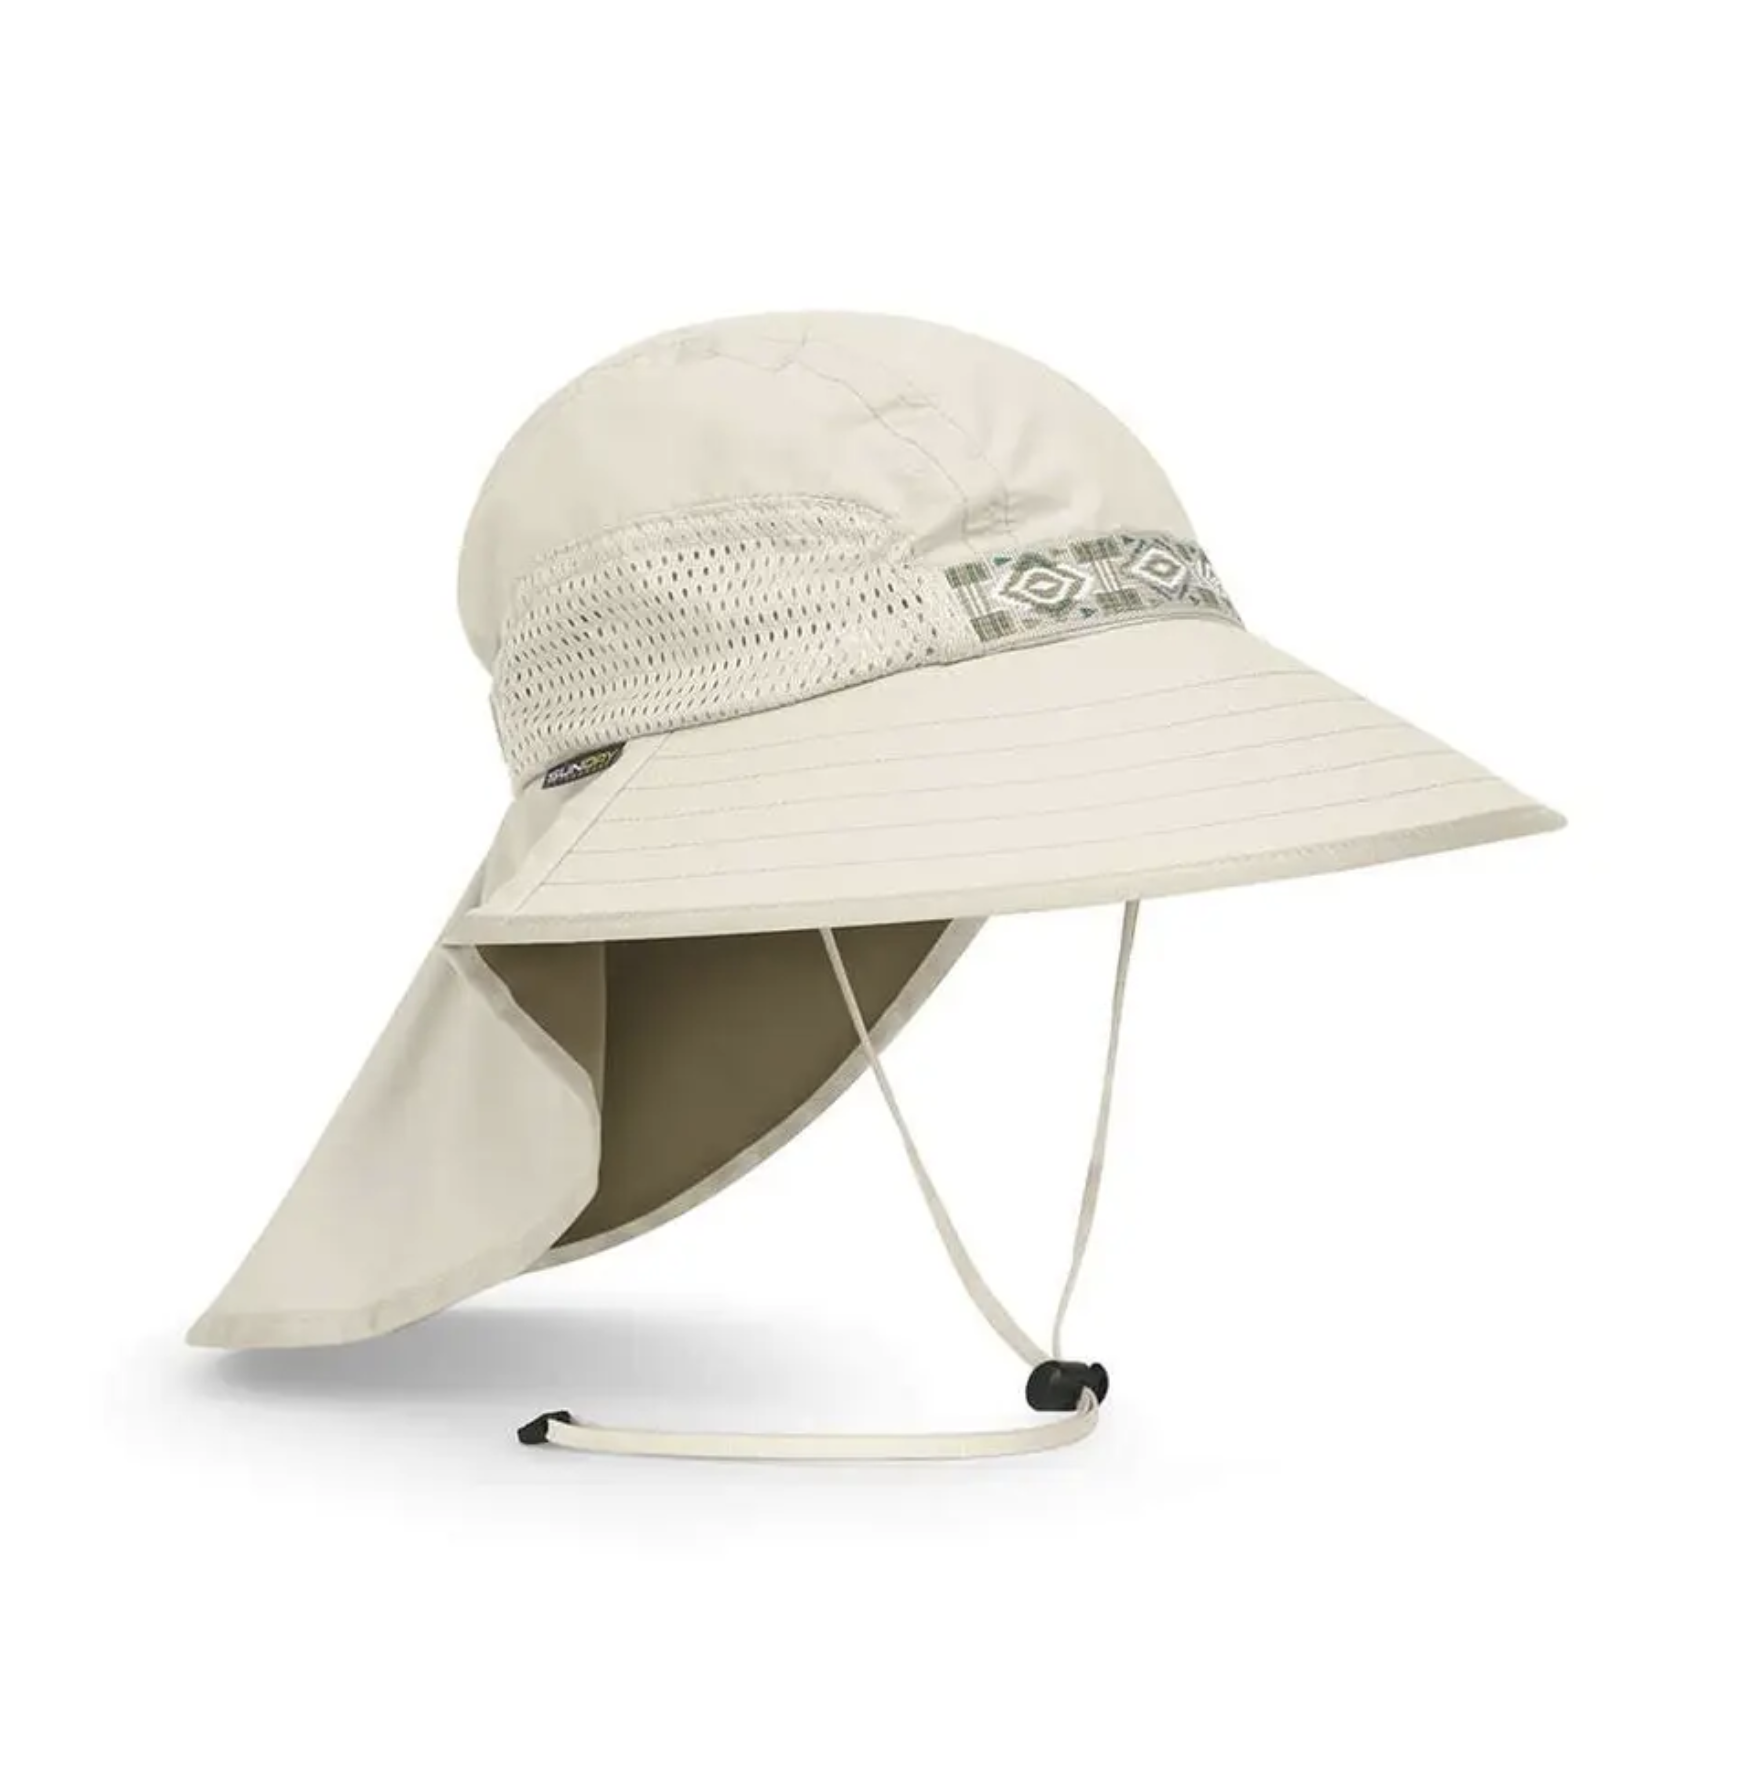 2021行山太陽帽推薦丨10款$199至$550包括Arc'teryx、Columbia及Salomon防曬防UV太陽帽精選